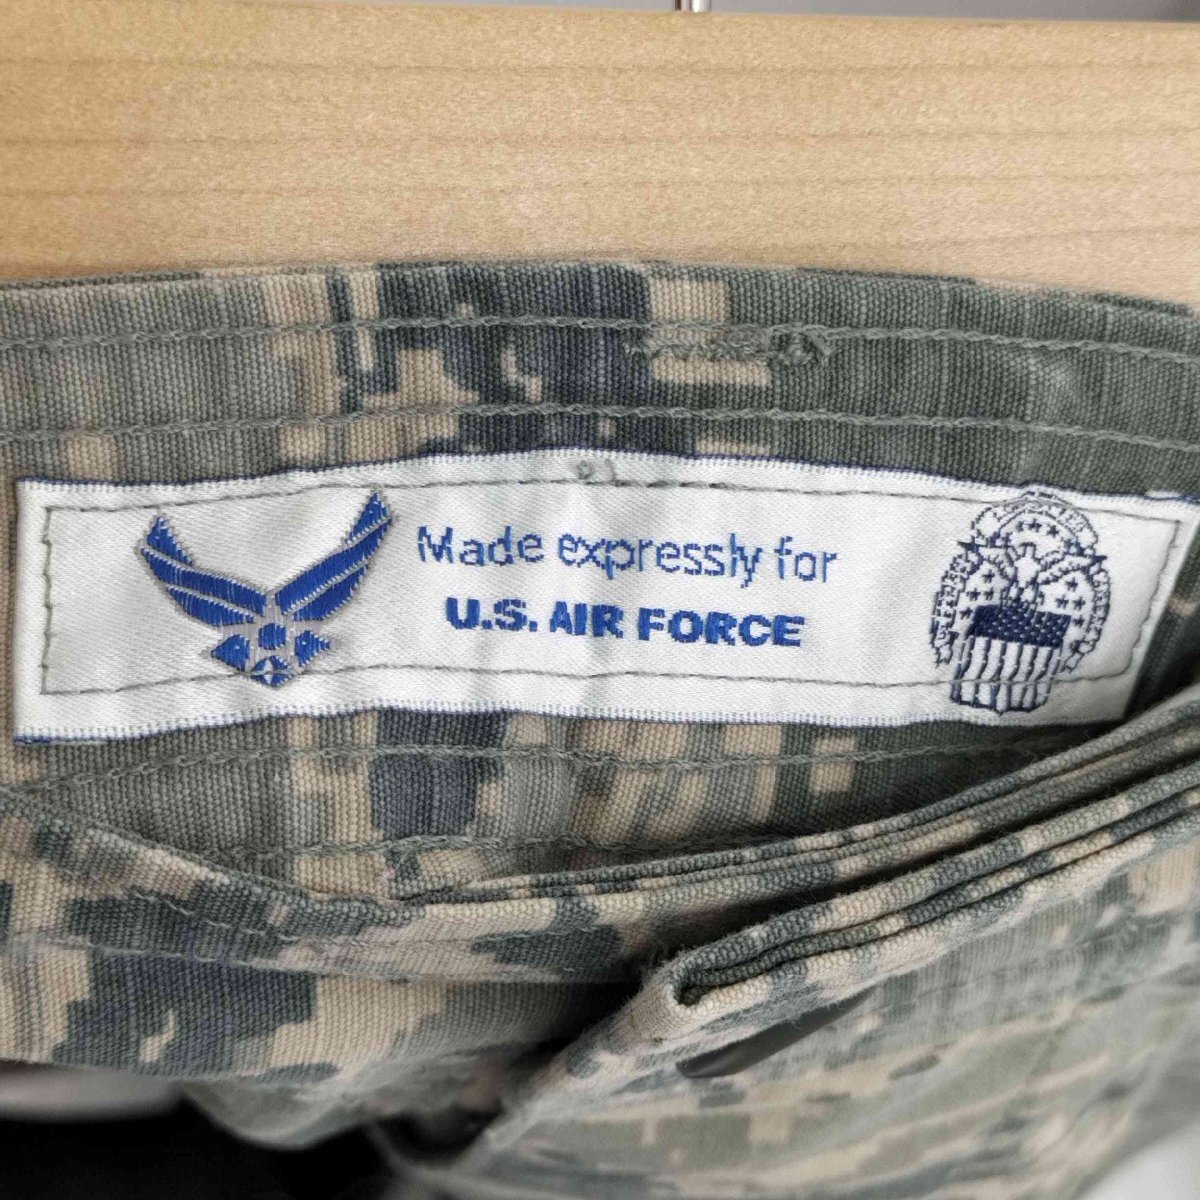 U.S. AIR FORCE(ユーエスエアーフォース) デジカモカーゴパンツ メンズ 30S 中古 古着 0122_画像6